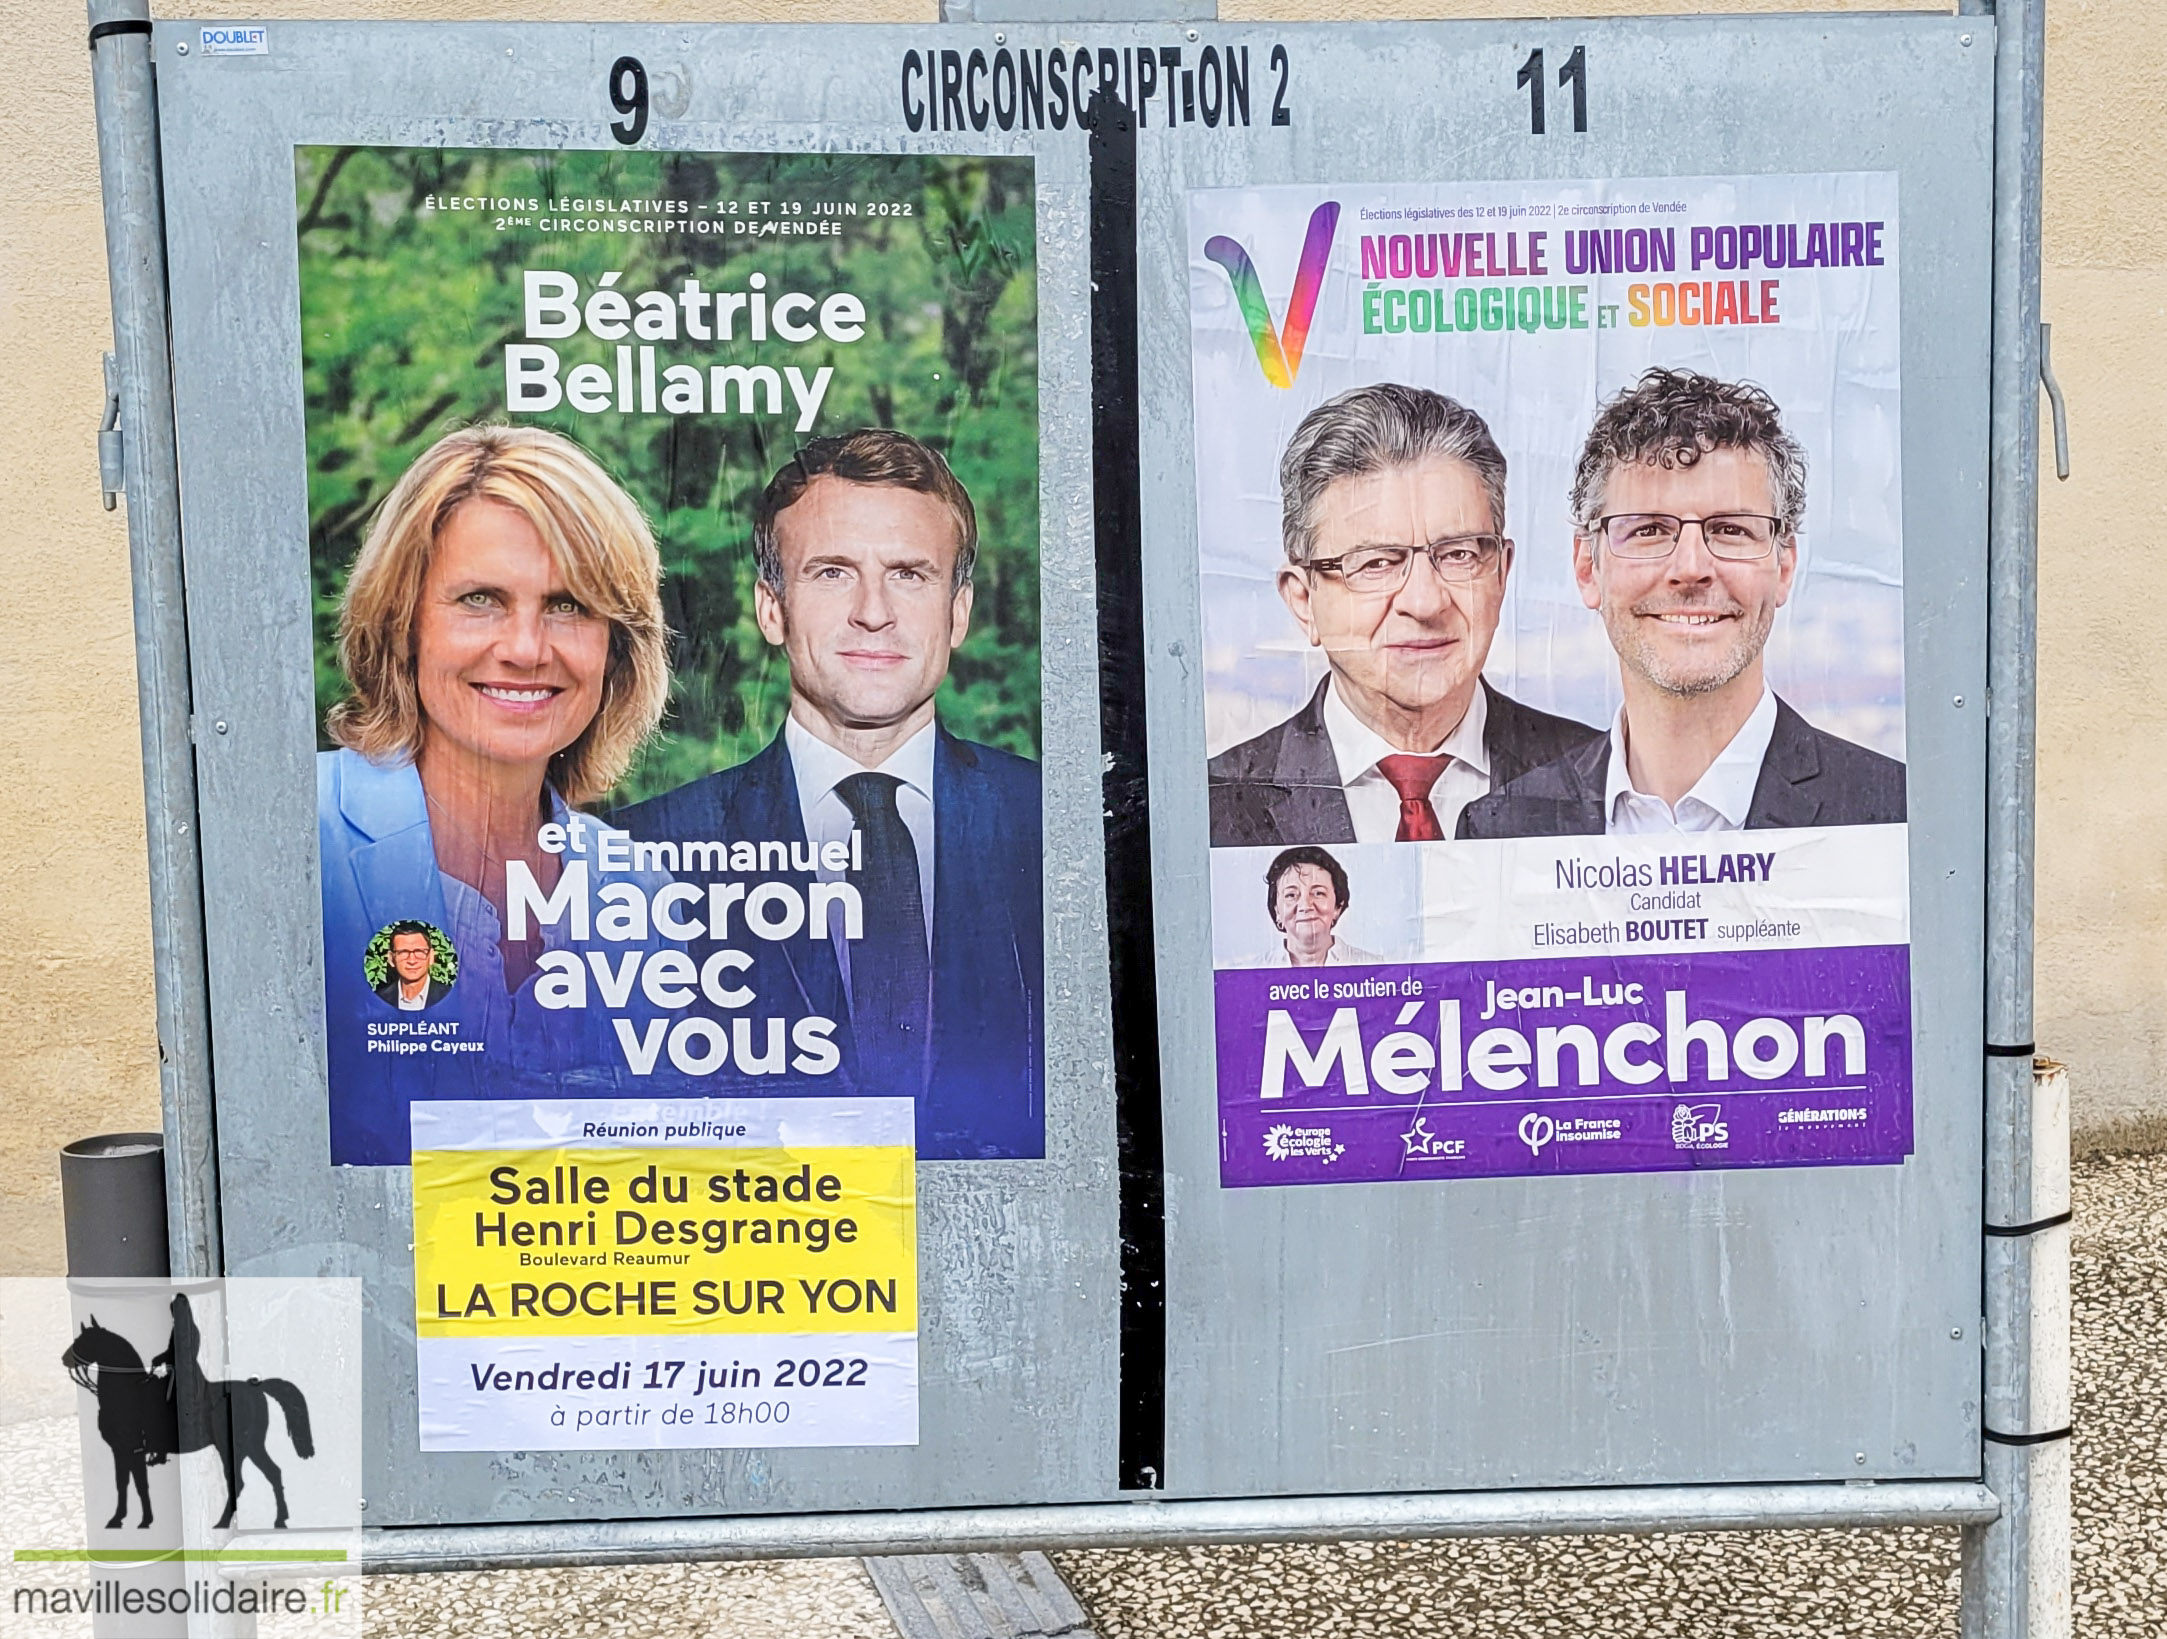 Législatives la Roche sur Yon mavillesolidaire.fr 2 sur 2